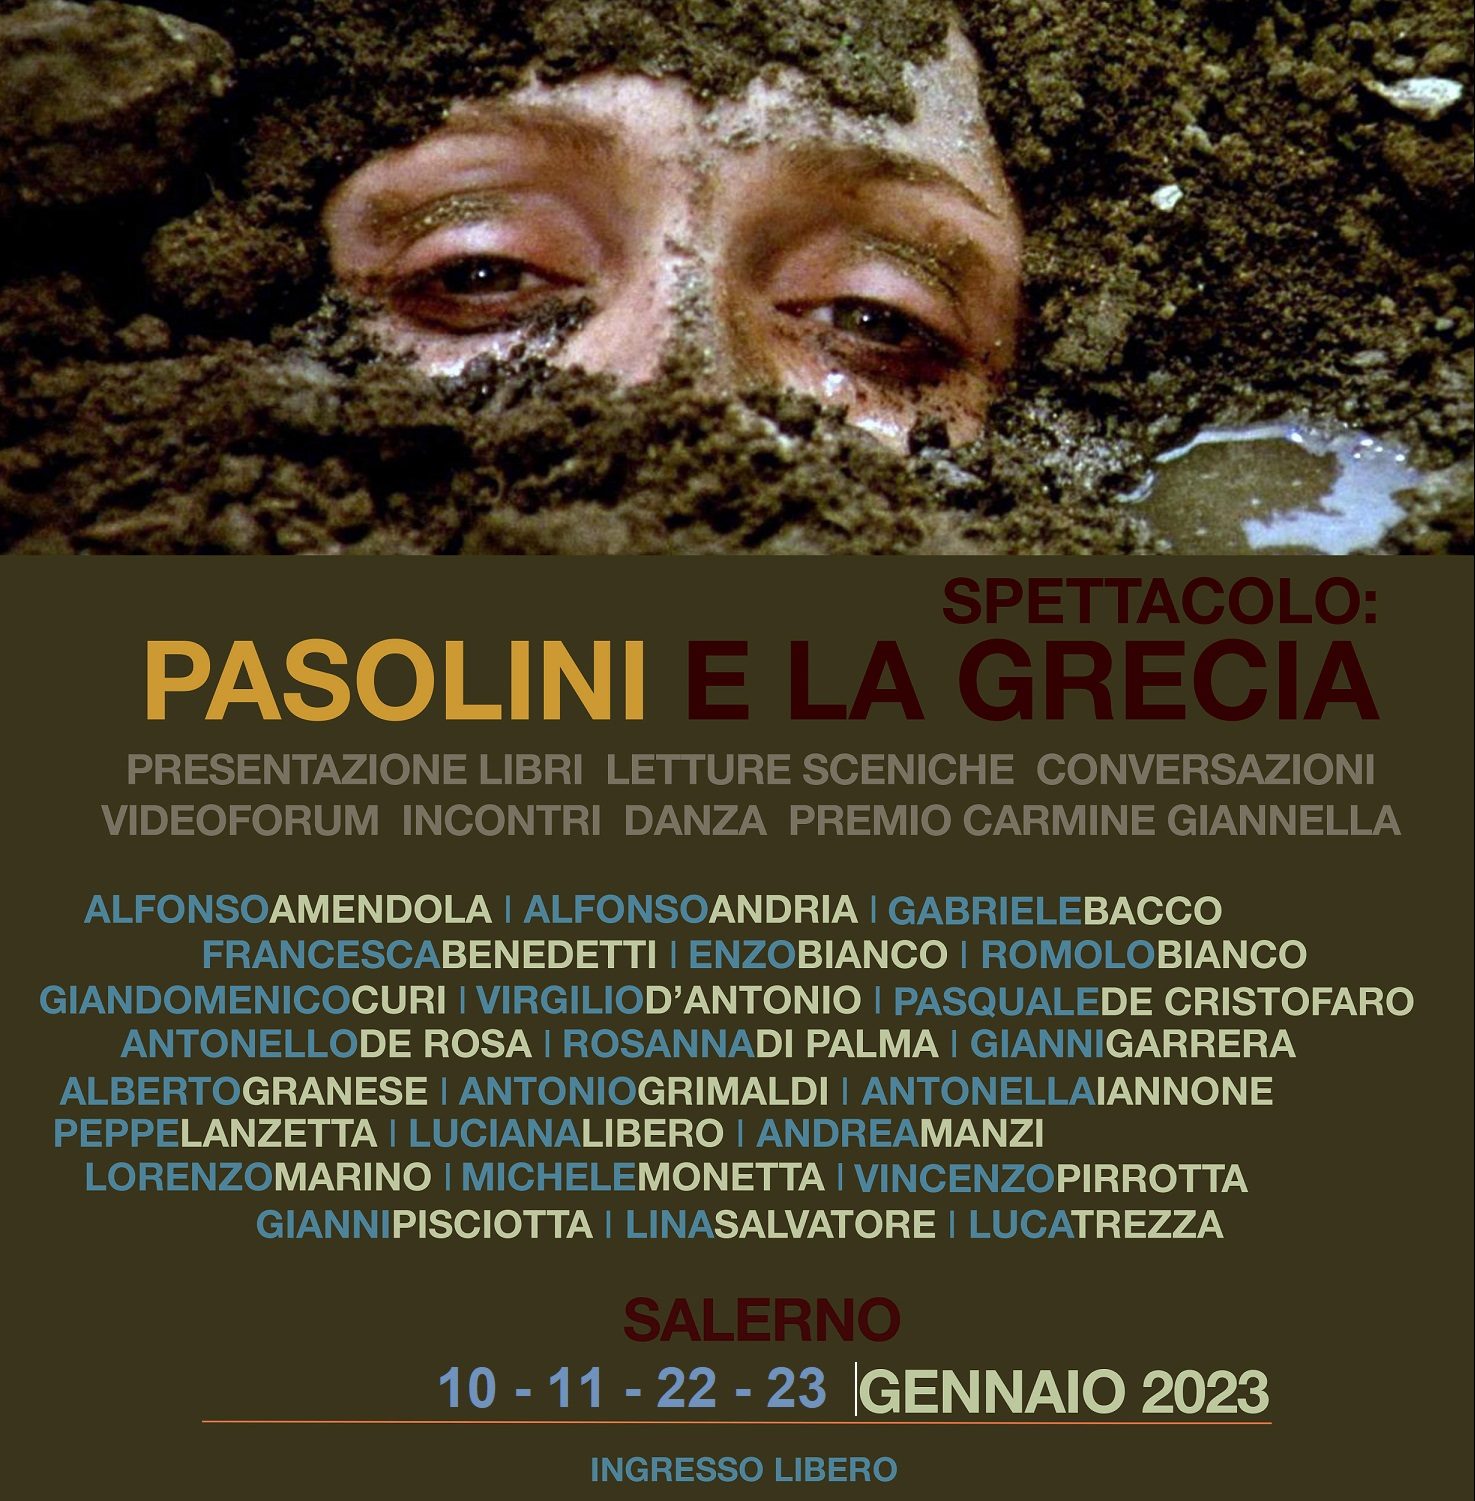 A Salerno la seconda parte della Maratona Pasolini con 4 eventi a gennaio